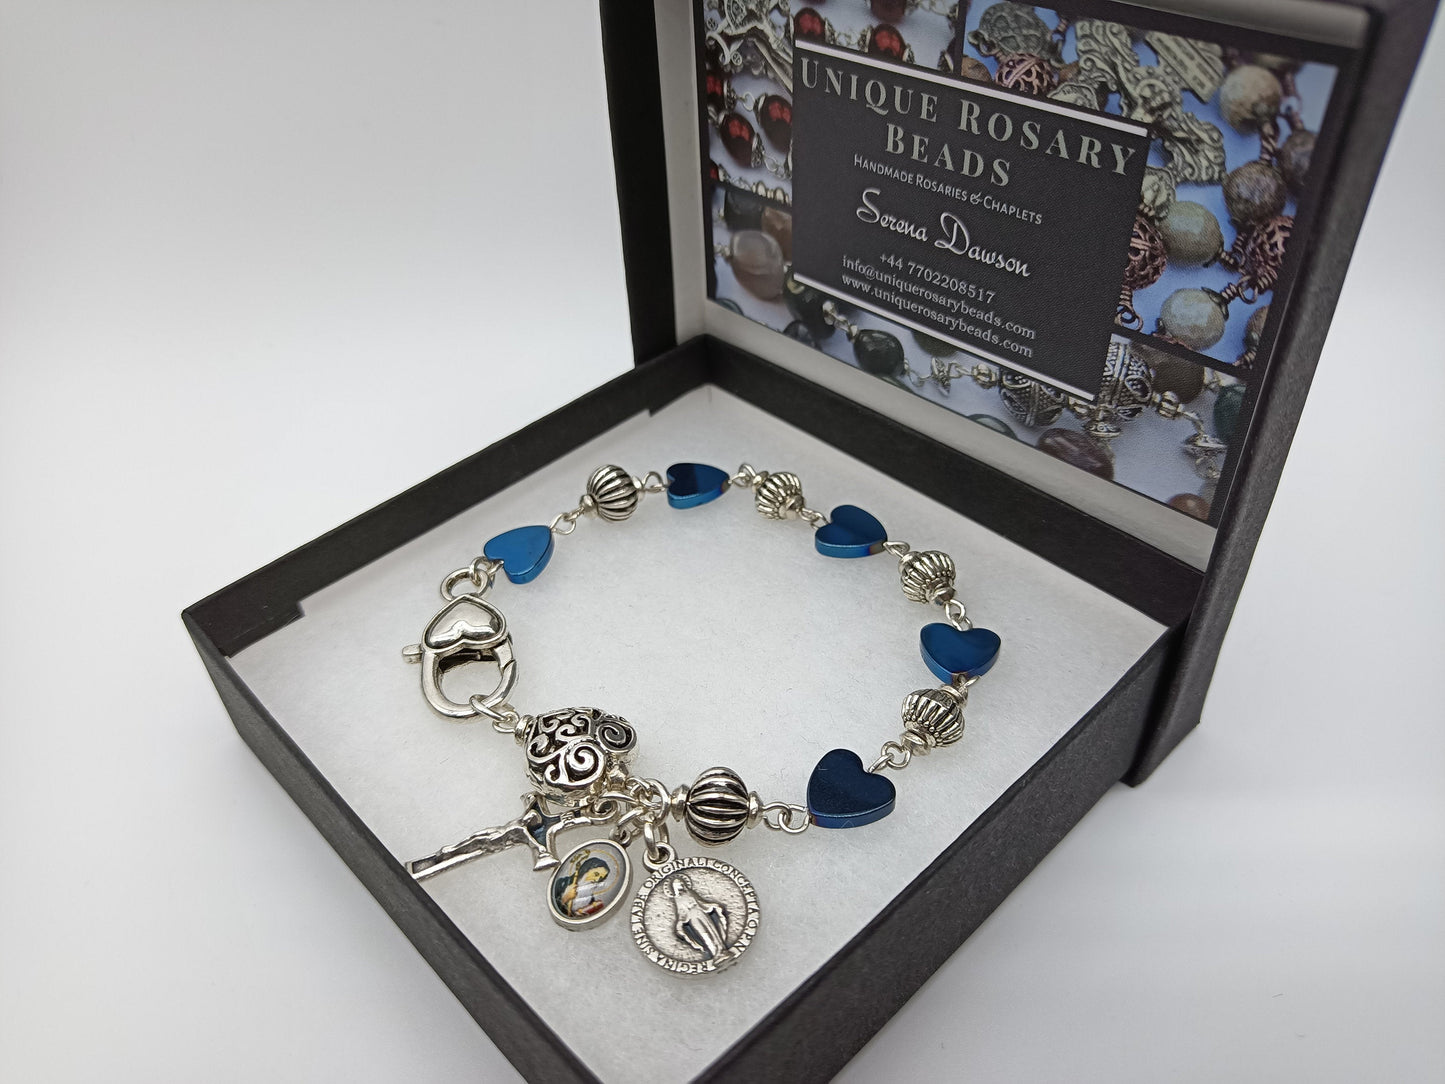 Genuine Hematite Rosary Bracelet, Miraculous medal prayer beads, Saint Benedict Medal, Car visor Rosary, spiritual prayer gift.